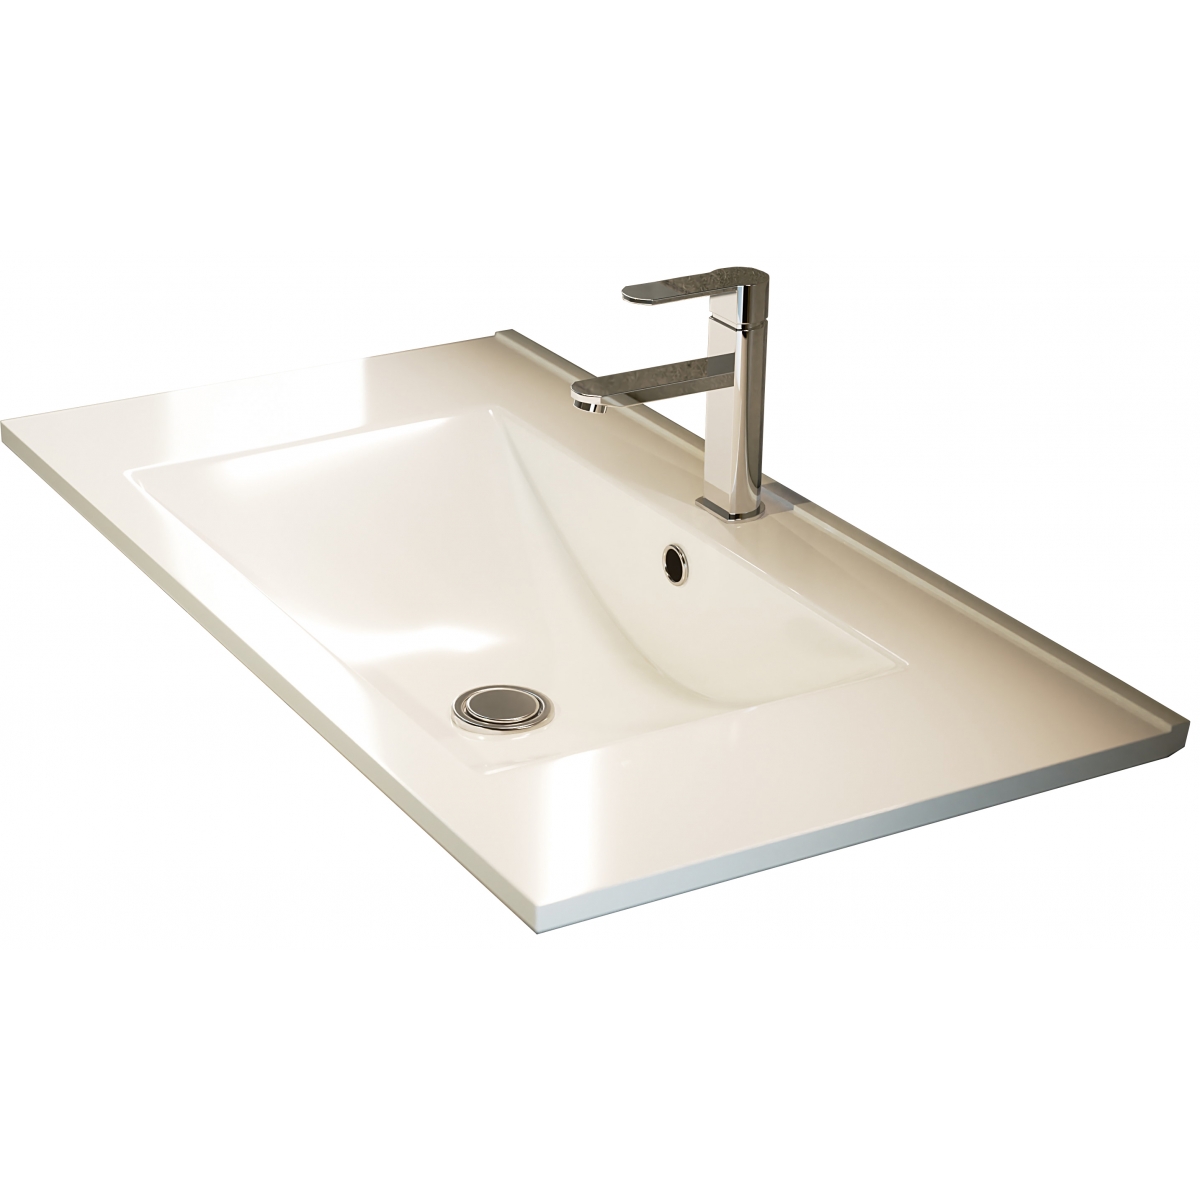 Fotos ambiente de Mueble de baño de suelo Bolton de 60 cm de ancho color Hiberian con lavabo integrado [54060]